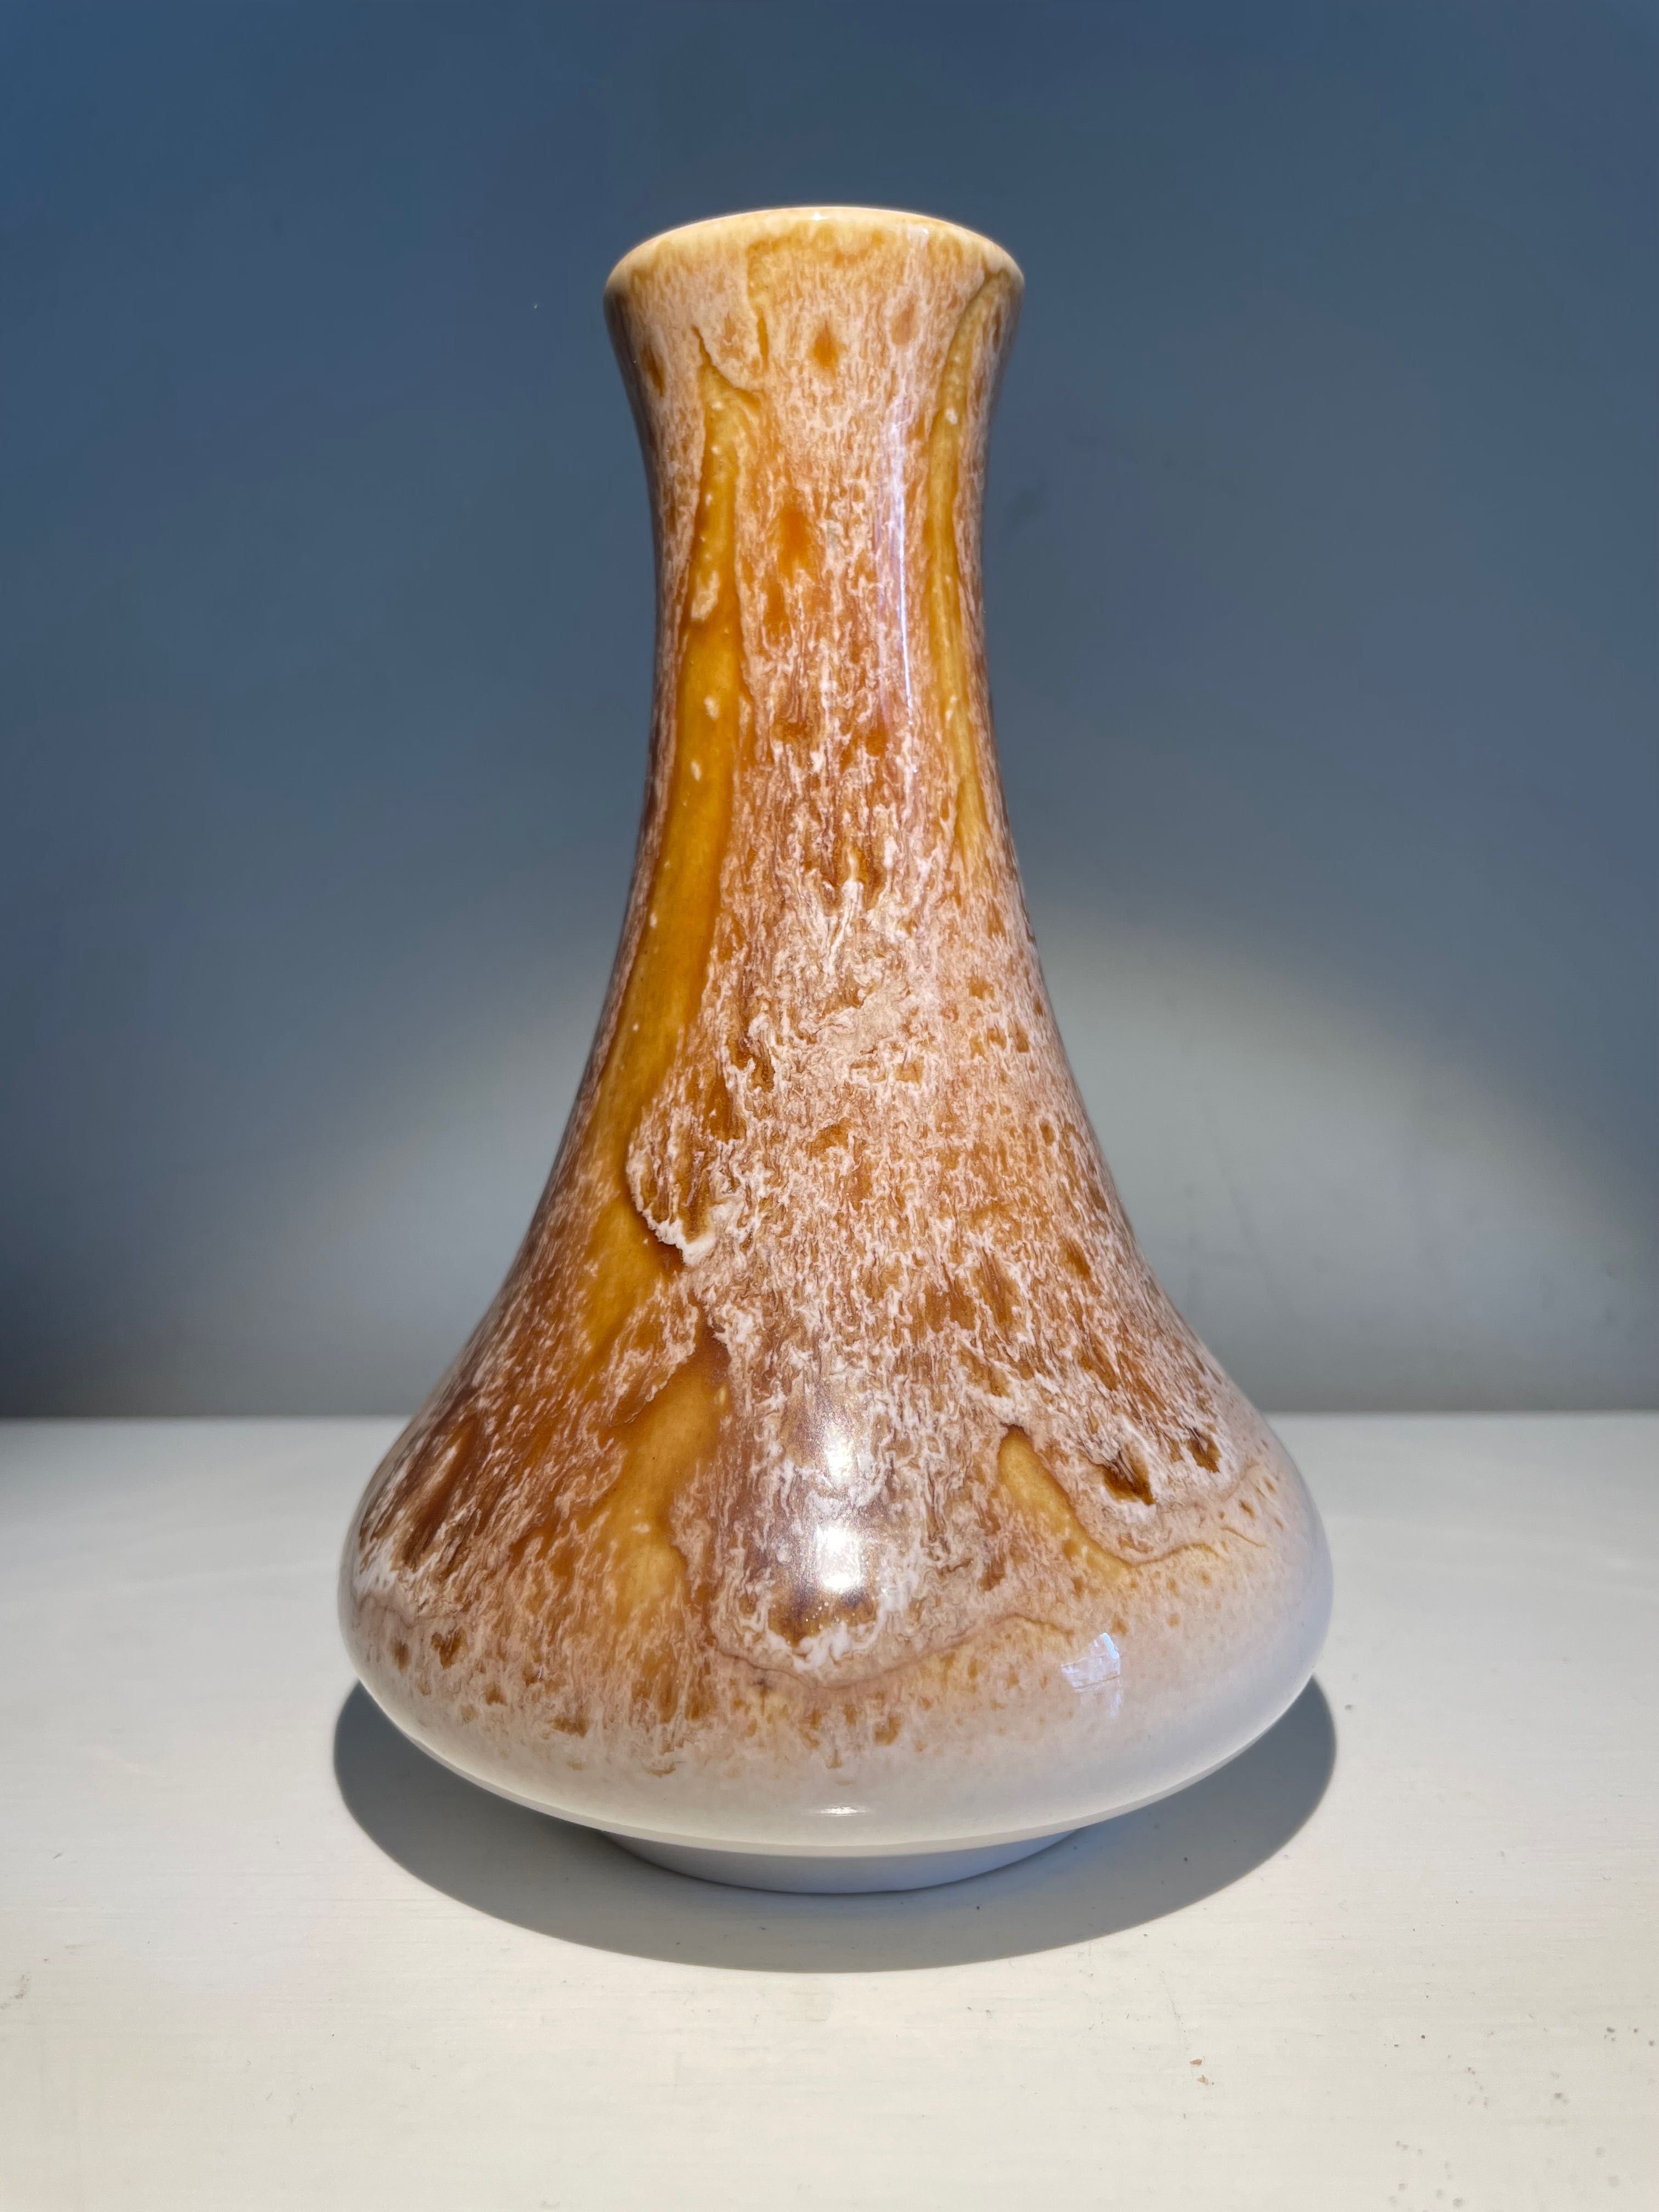 Przepięknie szkliwiony wazon Czechosłowacja. Stara ceramika